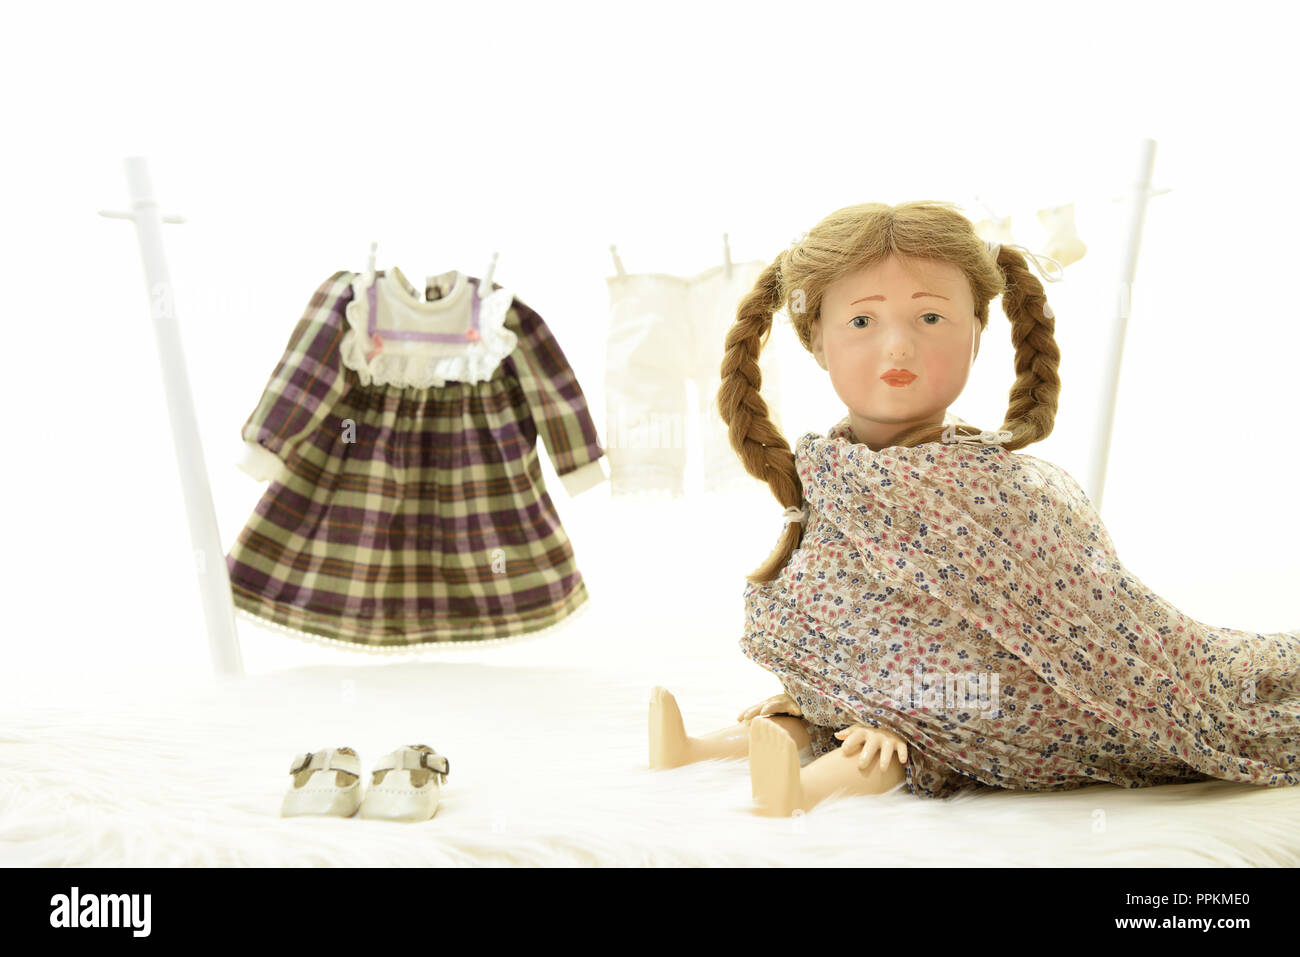 La bambola Elise sta cercando la sua stoffa (Germania). Puppe Elise hat Wäsche zum trocknen auf eine Wäscheleine gehängt. Foto Stock